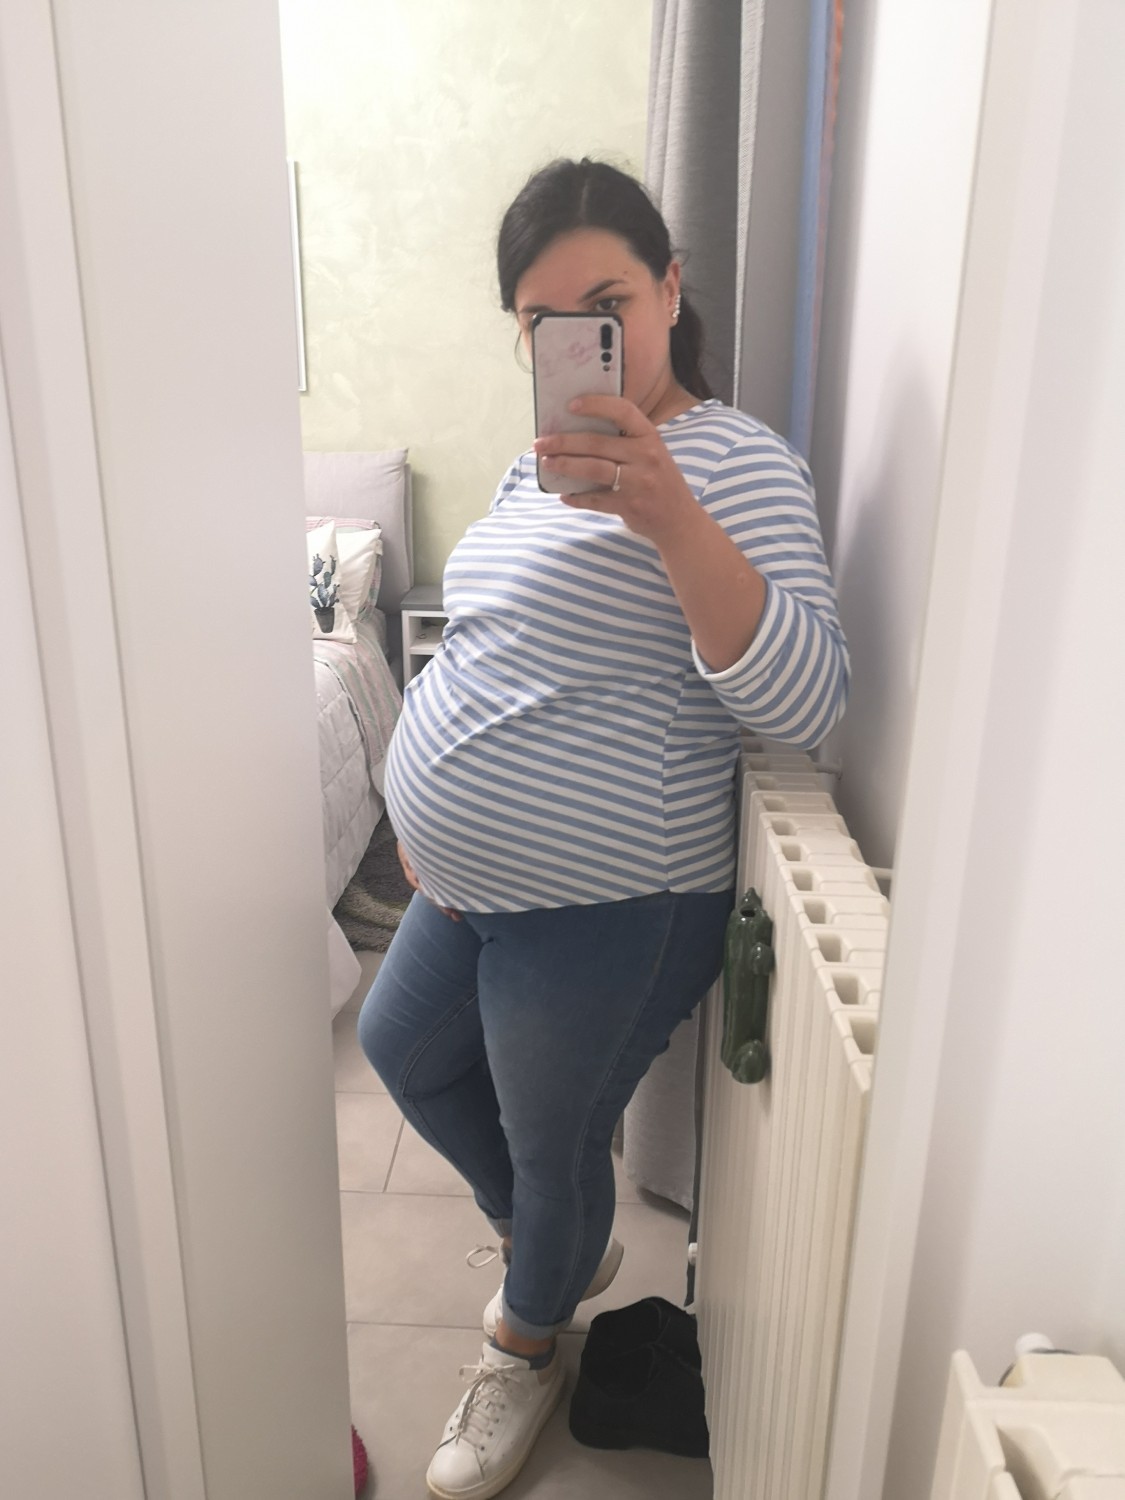 Jeans al 9 mese di gravidanza